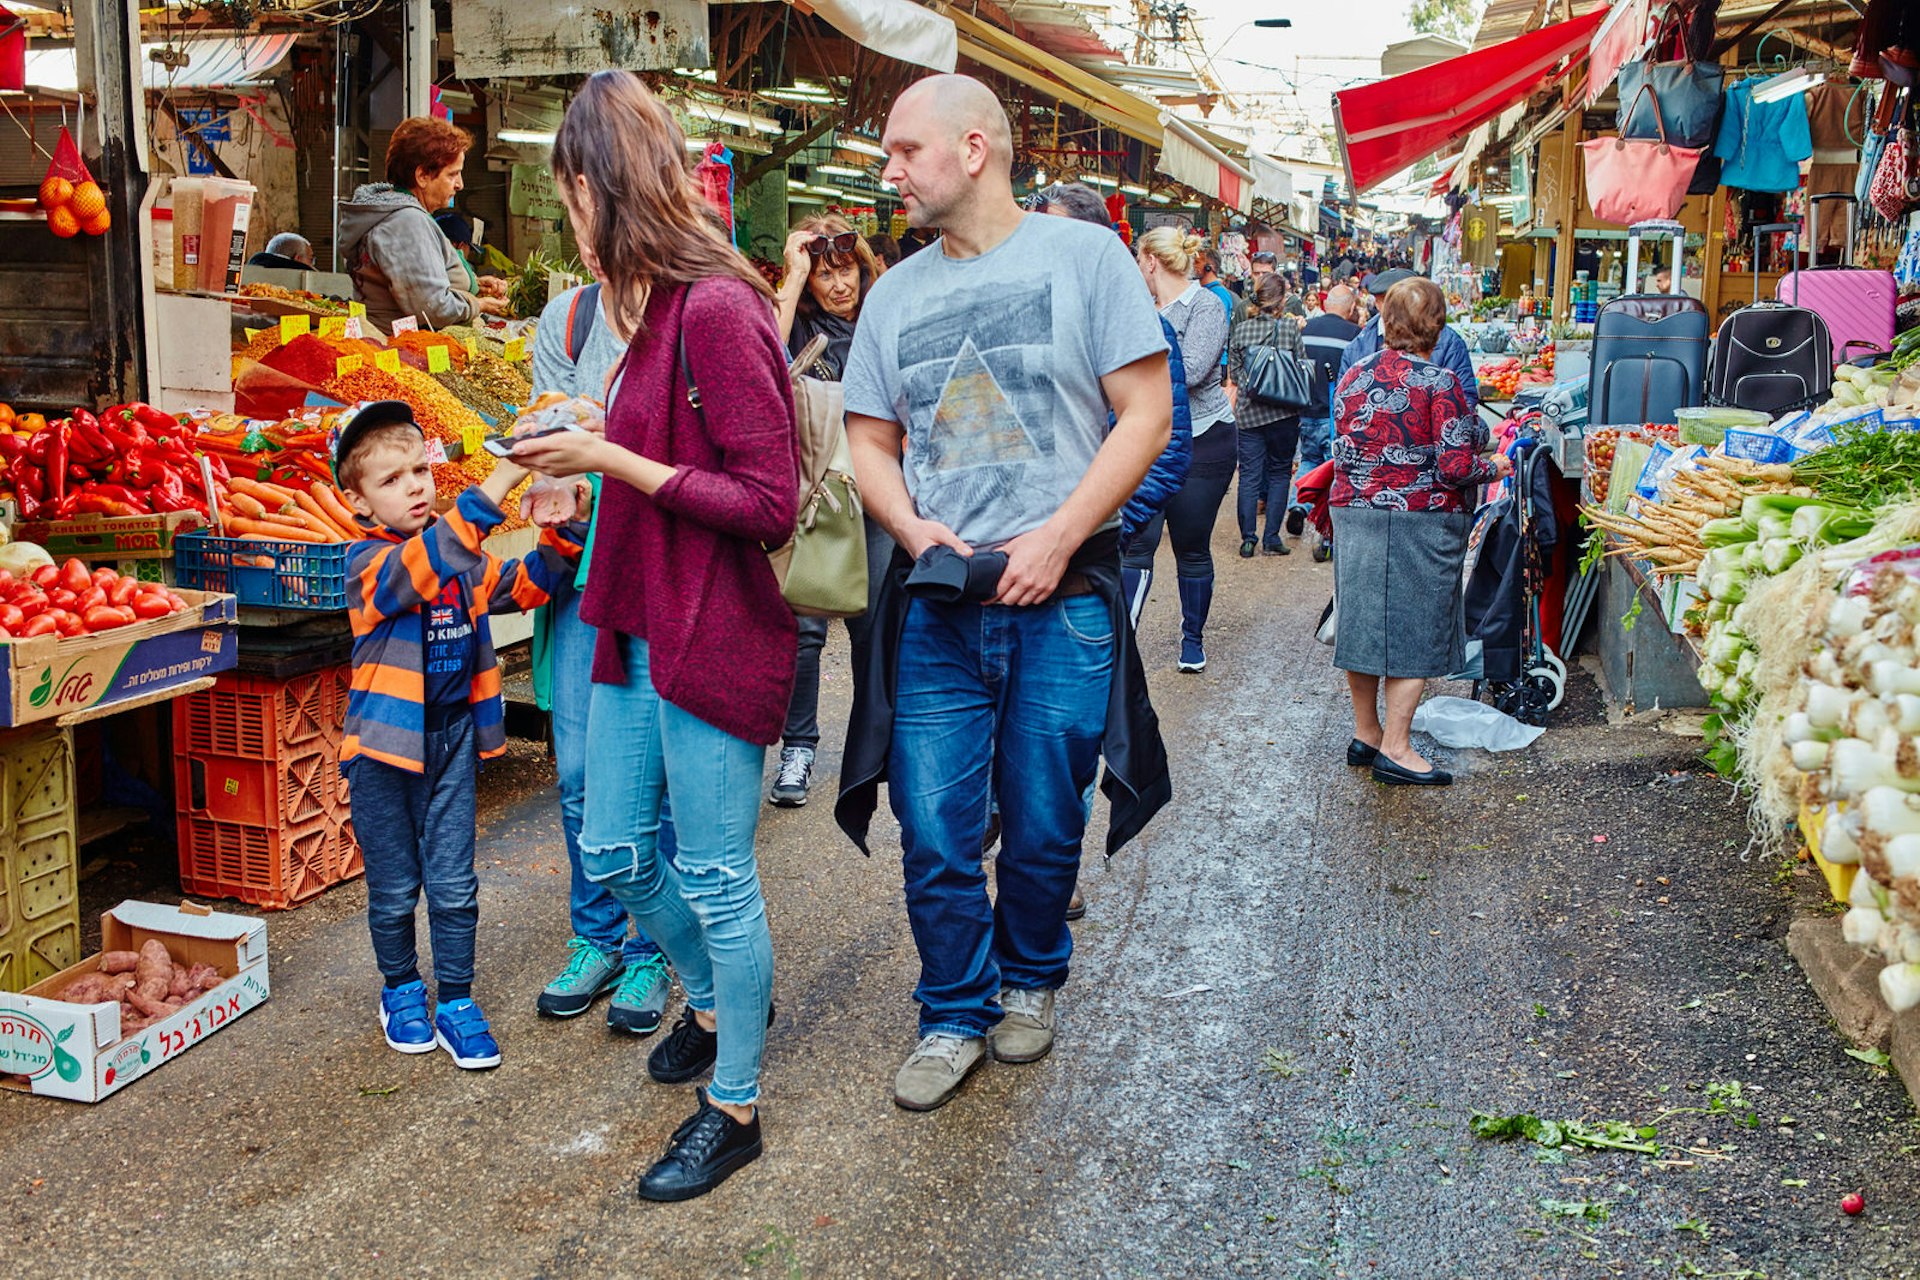 Family in Carmel Market, Tel Aviv. Image by rasika108 / Shutterstock